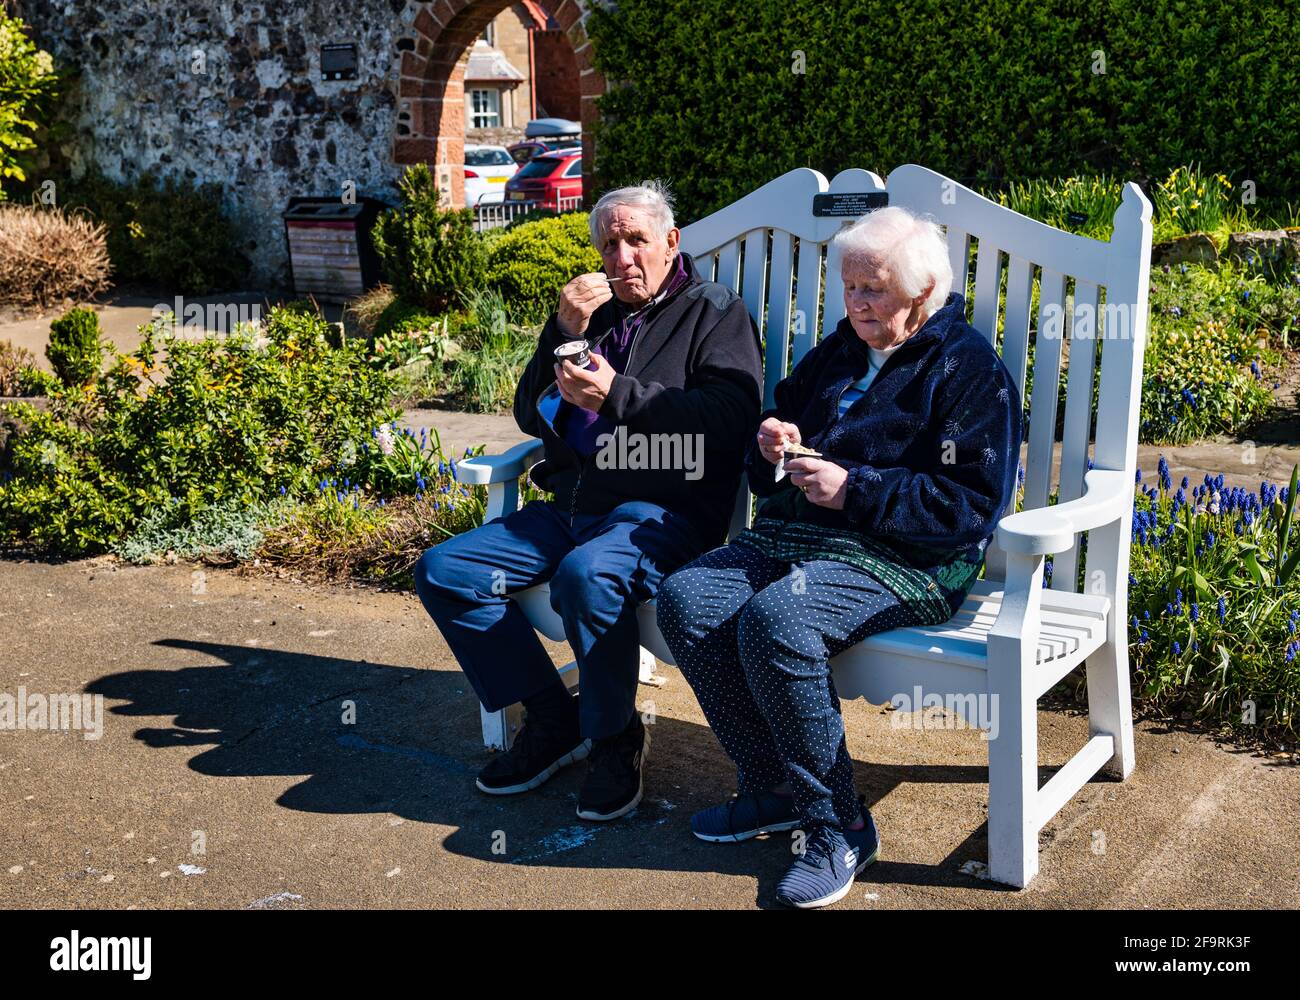 Couple de personnes âgées assis sur le banc pour manger de la glace au soleil, Lodge Grounds Park, North Berwick, East Lothian, Écosse, ROYAUME-UNI Banque D'Images